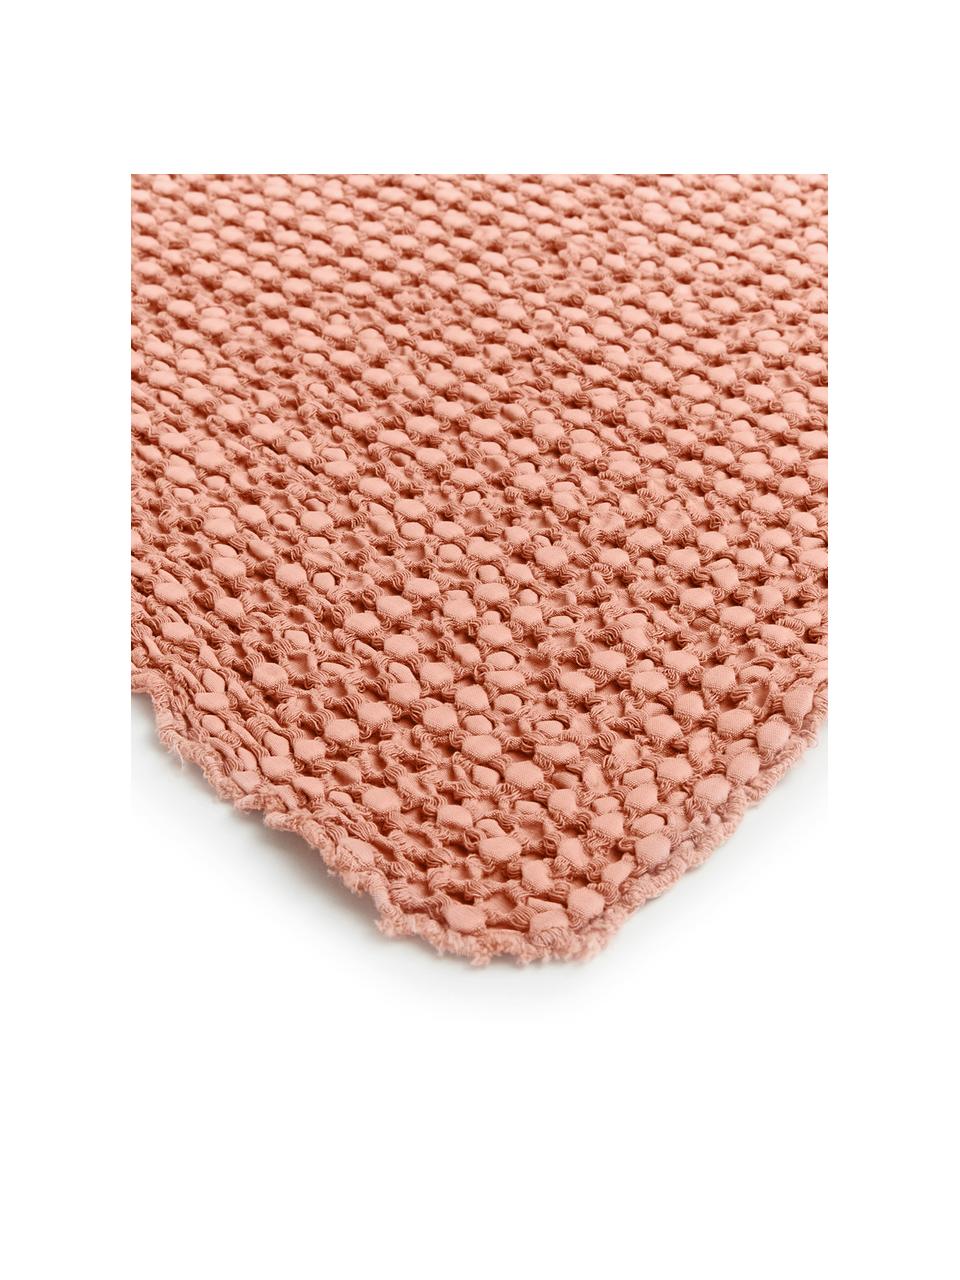 Couvre-lit coton rose à surface texturée Vigo, 100 % coton, Rose clair, larg. 220 x long. 240 cm (pour lits jusqu'à 180 x 200)